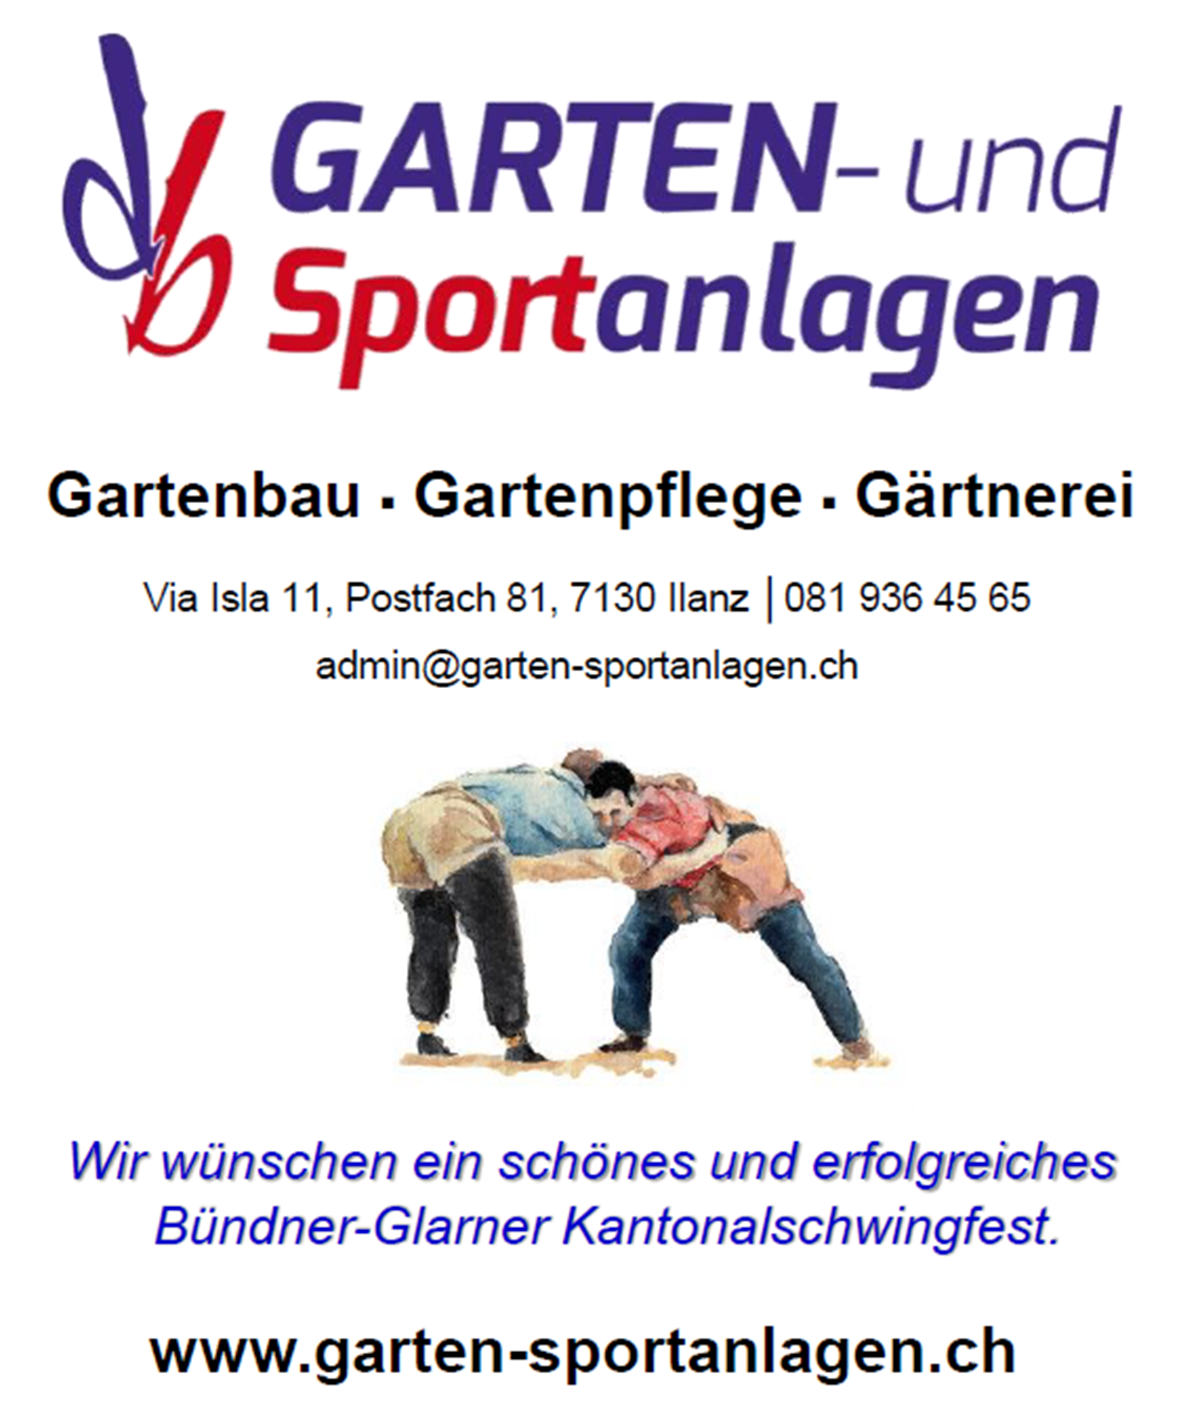 db Garten - und Sportanlagen AG